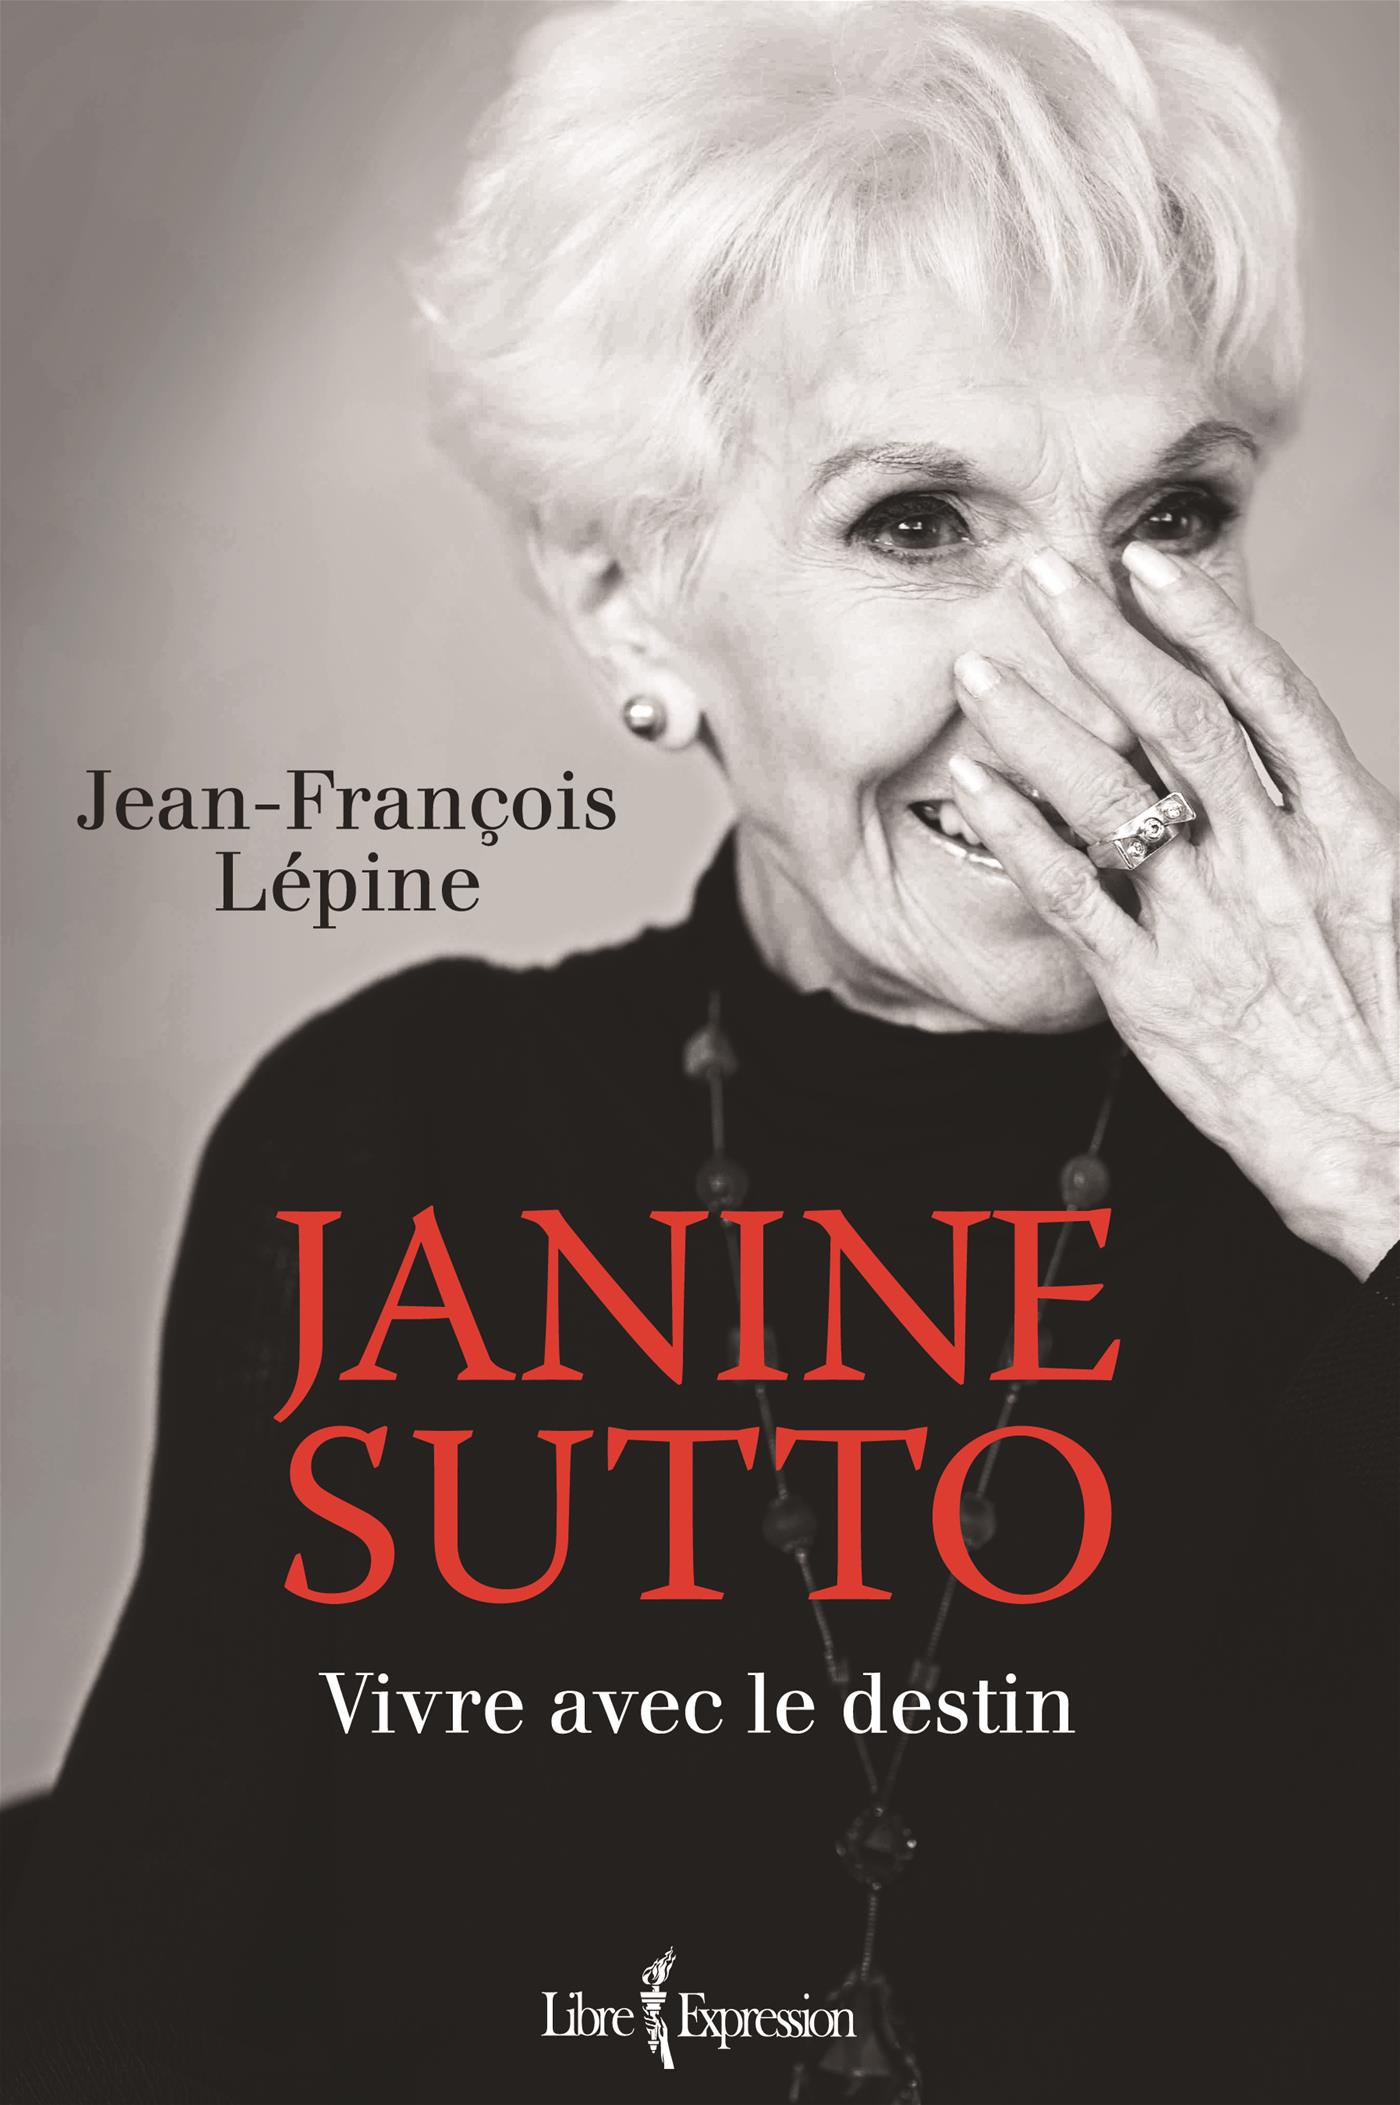 Janine Sutto - Vivre avec le destin